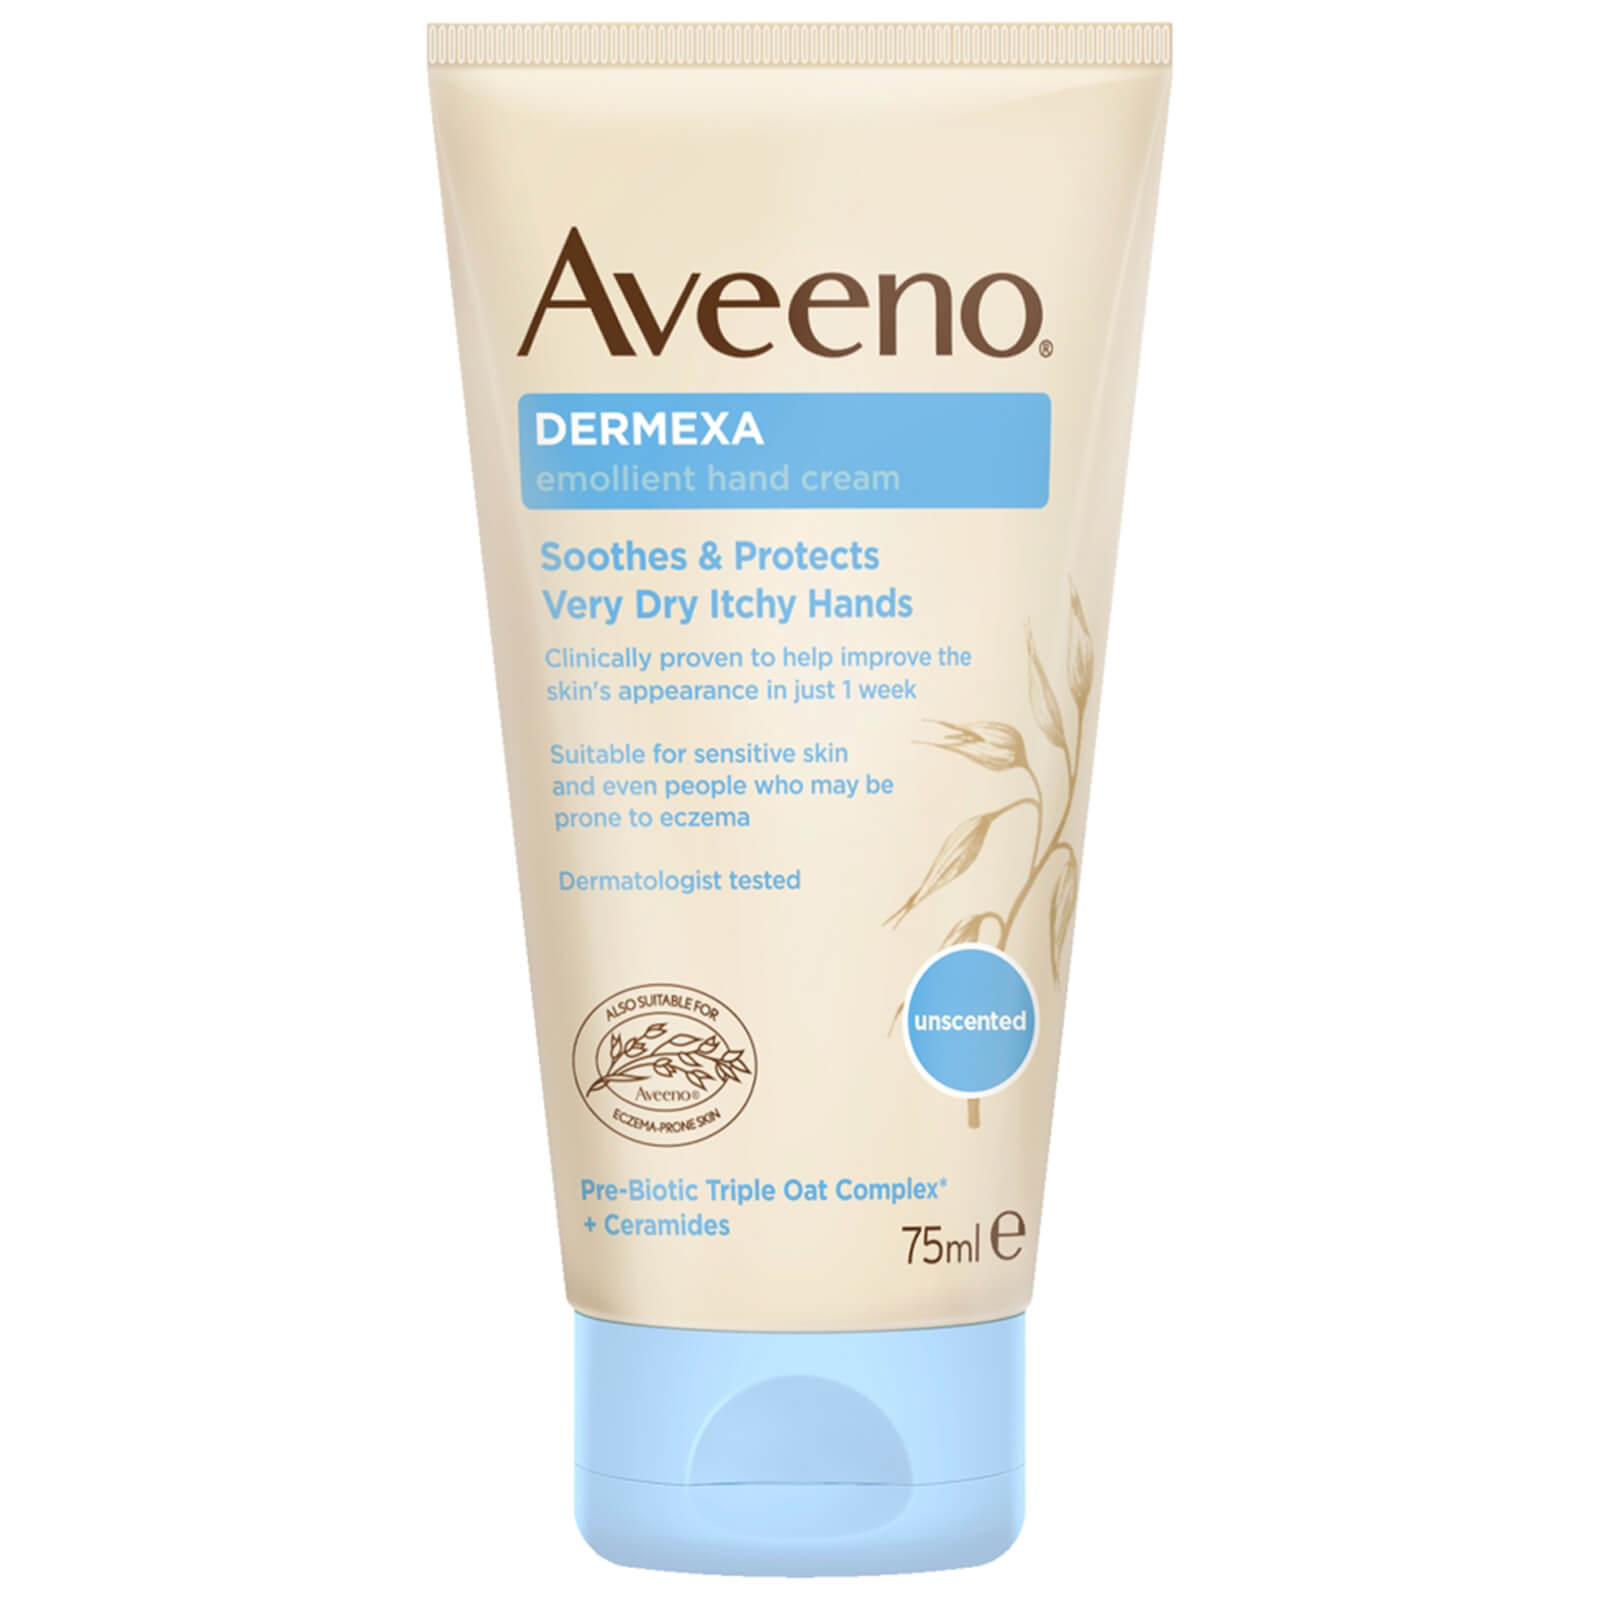 Aveeno Dermexa Emollient Hand Cream 75ml